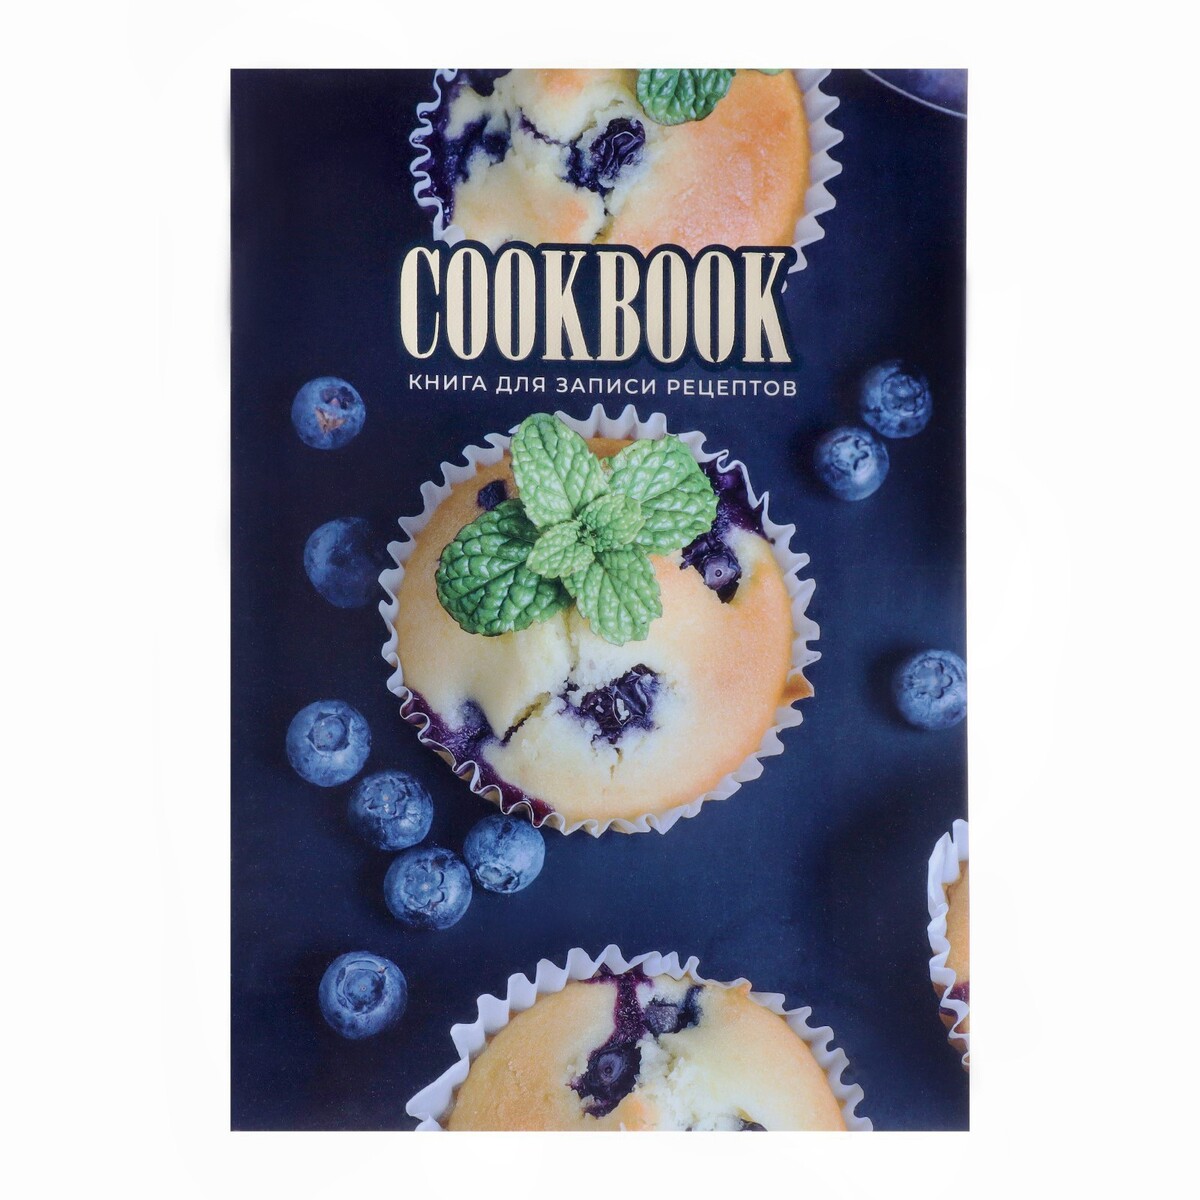 Книга для записи кулинарных рецептов а5, 48 листов книга для записи кулинарных рецептов а5 80 листов мои рецепты твёрдая обложка